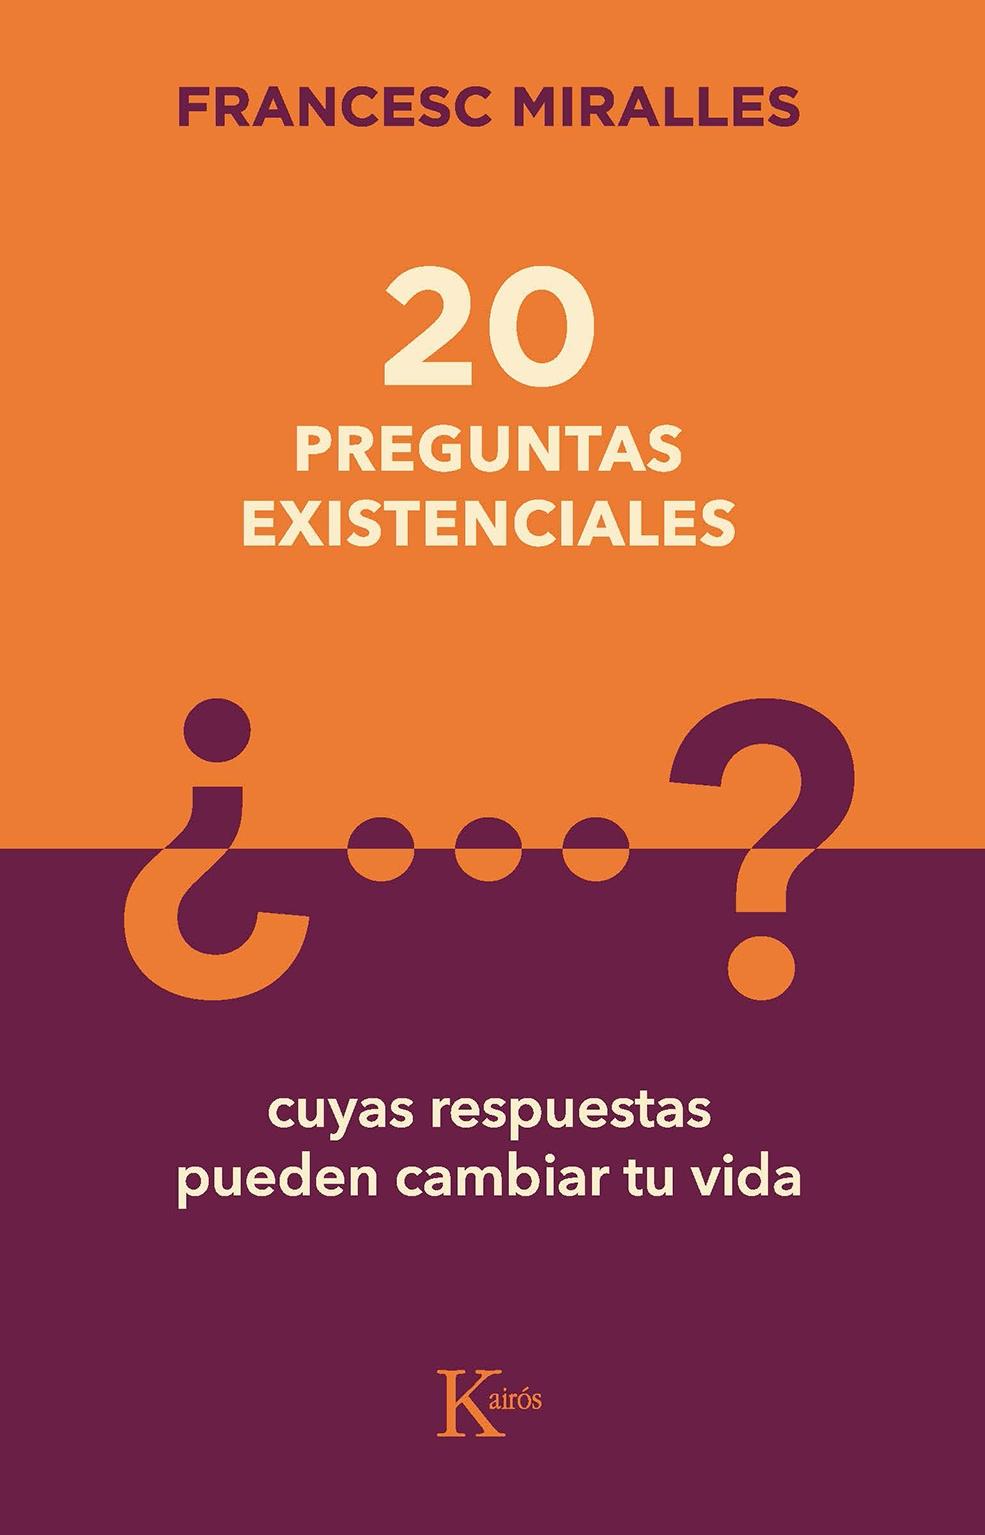 20 PREGUNTAS EXISTENCIALES "CUYAS RESPUESTAS PUEDEN CAMBIAR TU VIDA."